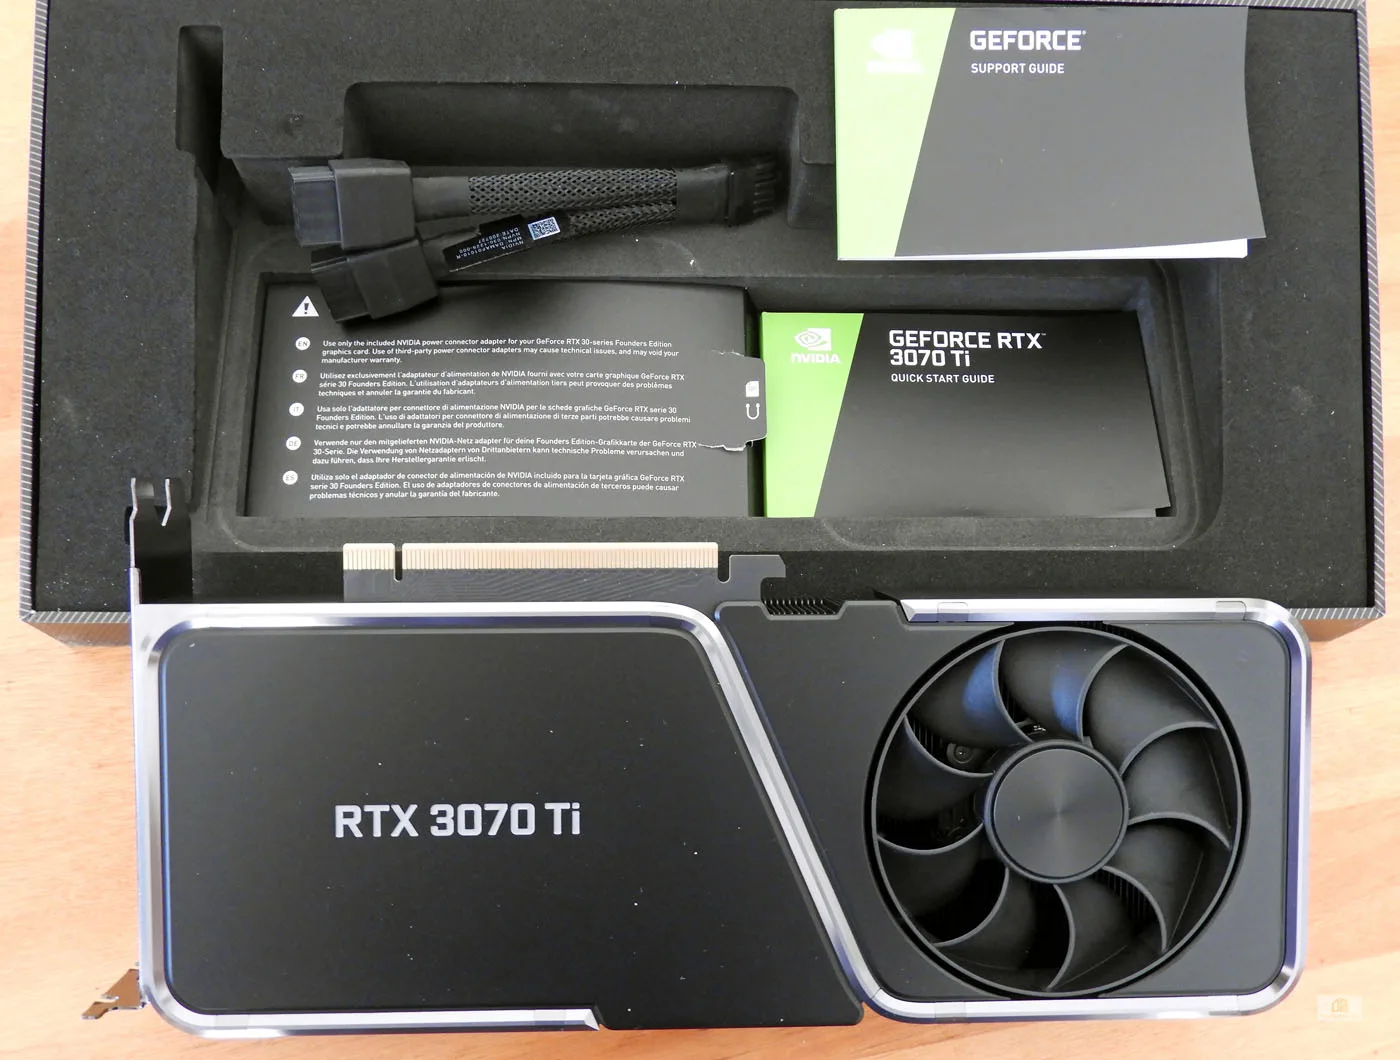 Nvidia GTX + RTX Assetto Corsa Competizione GPU benchmark – Simracing-PC